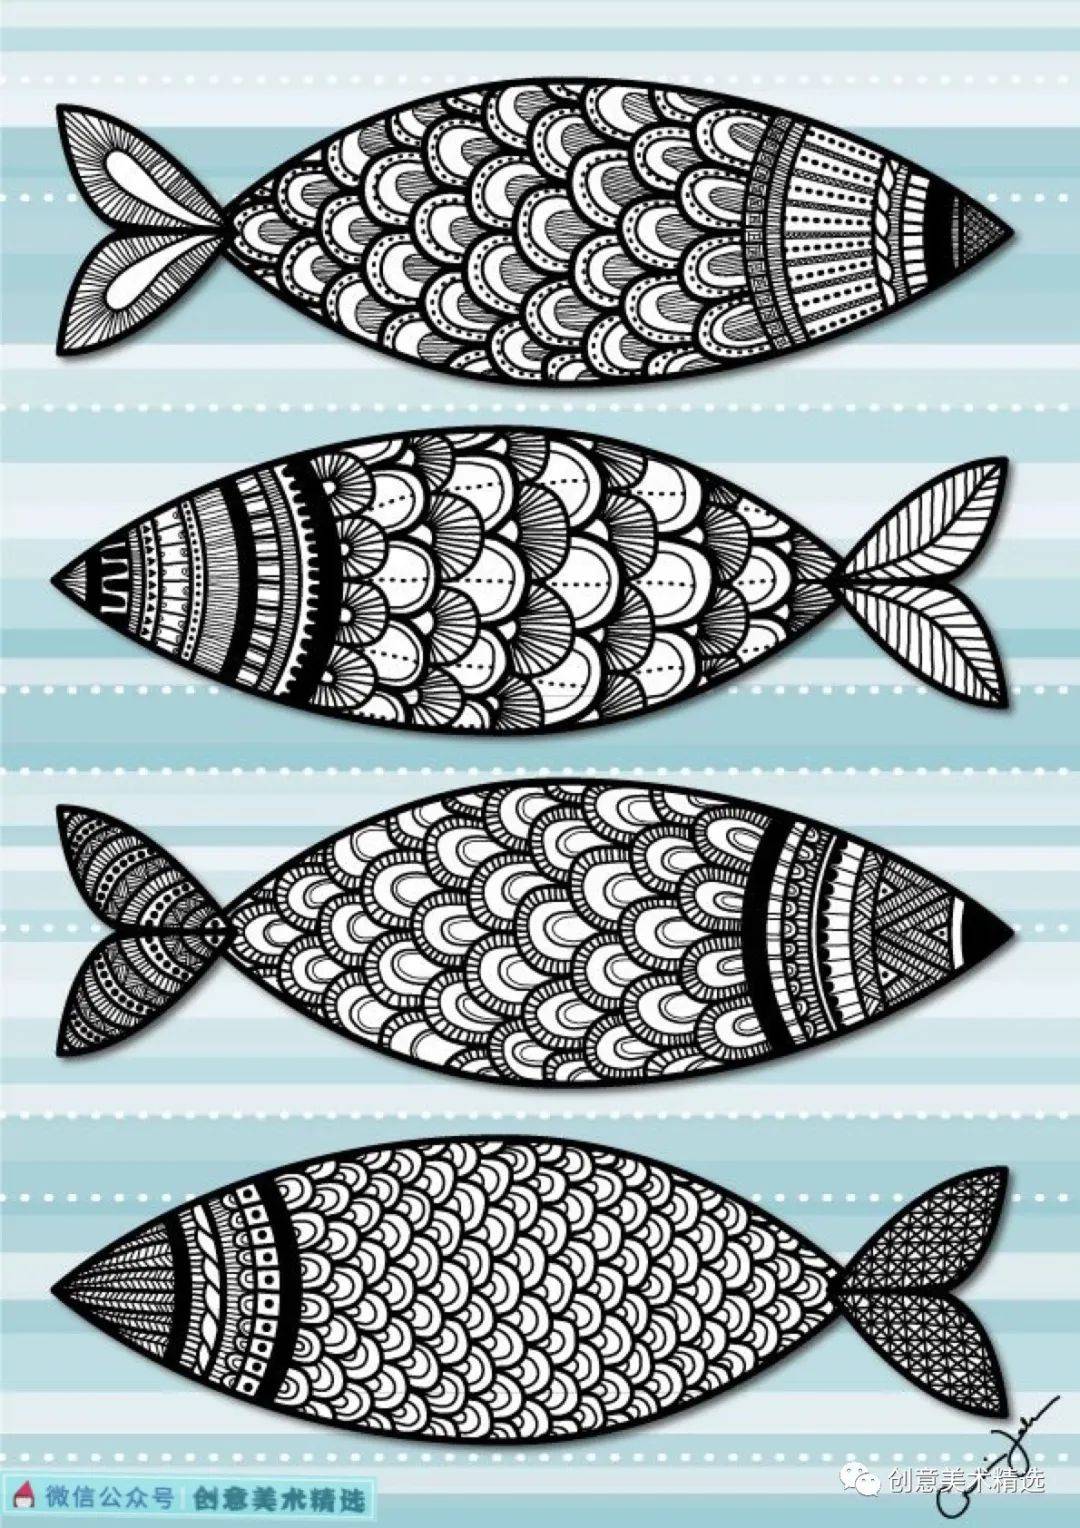 18张鱼儿创意装饰画,倾听来自大海的声音